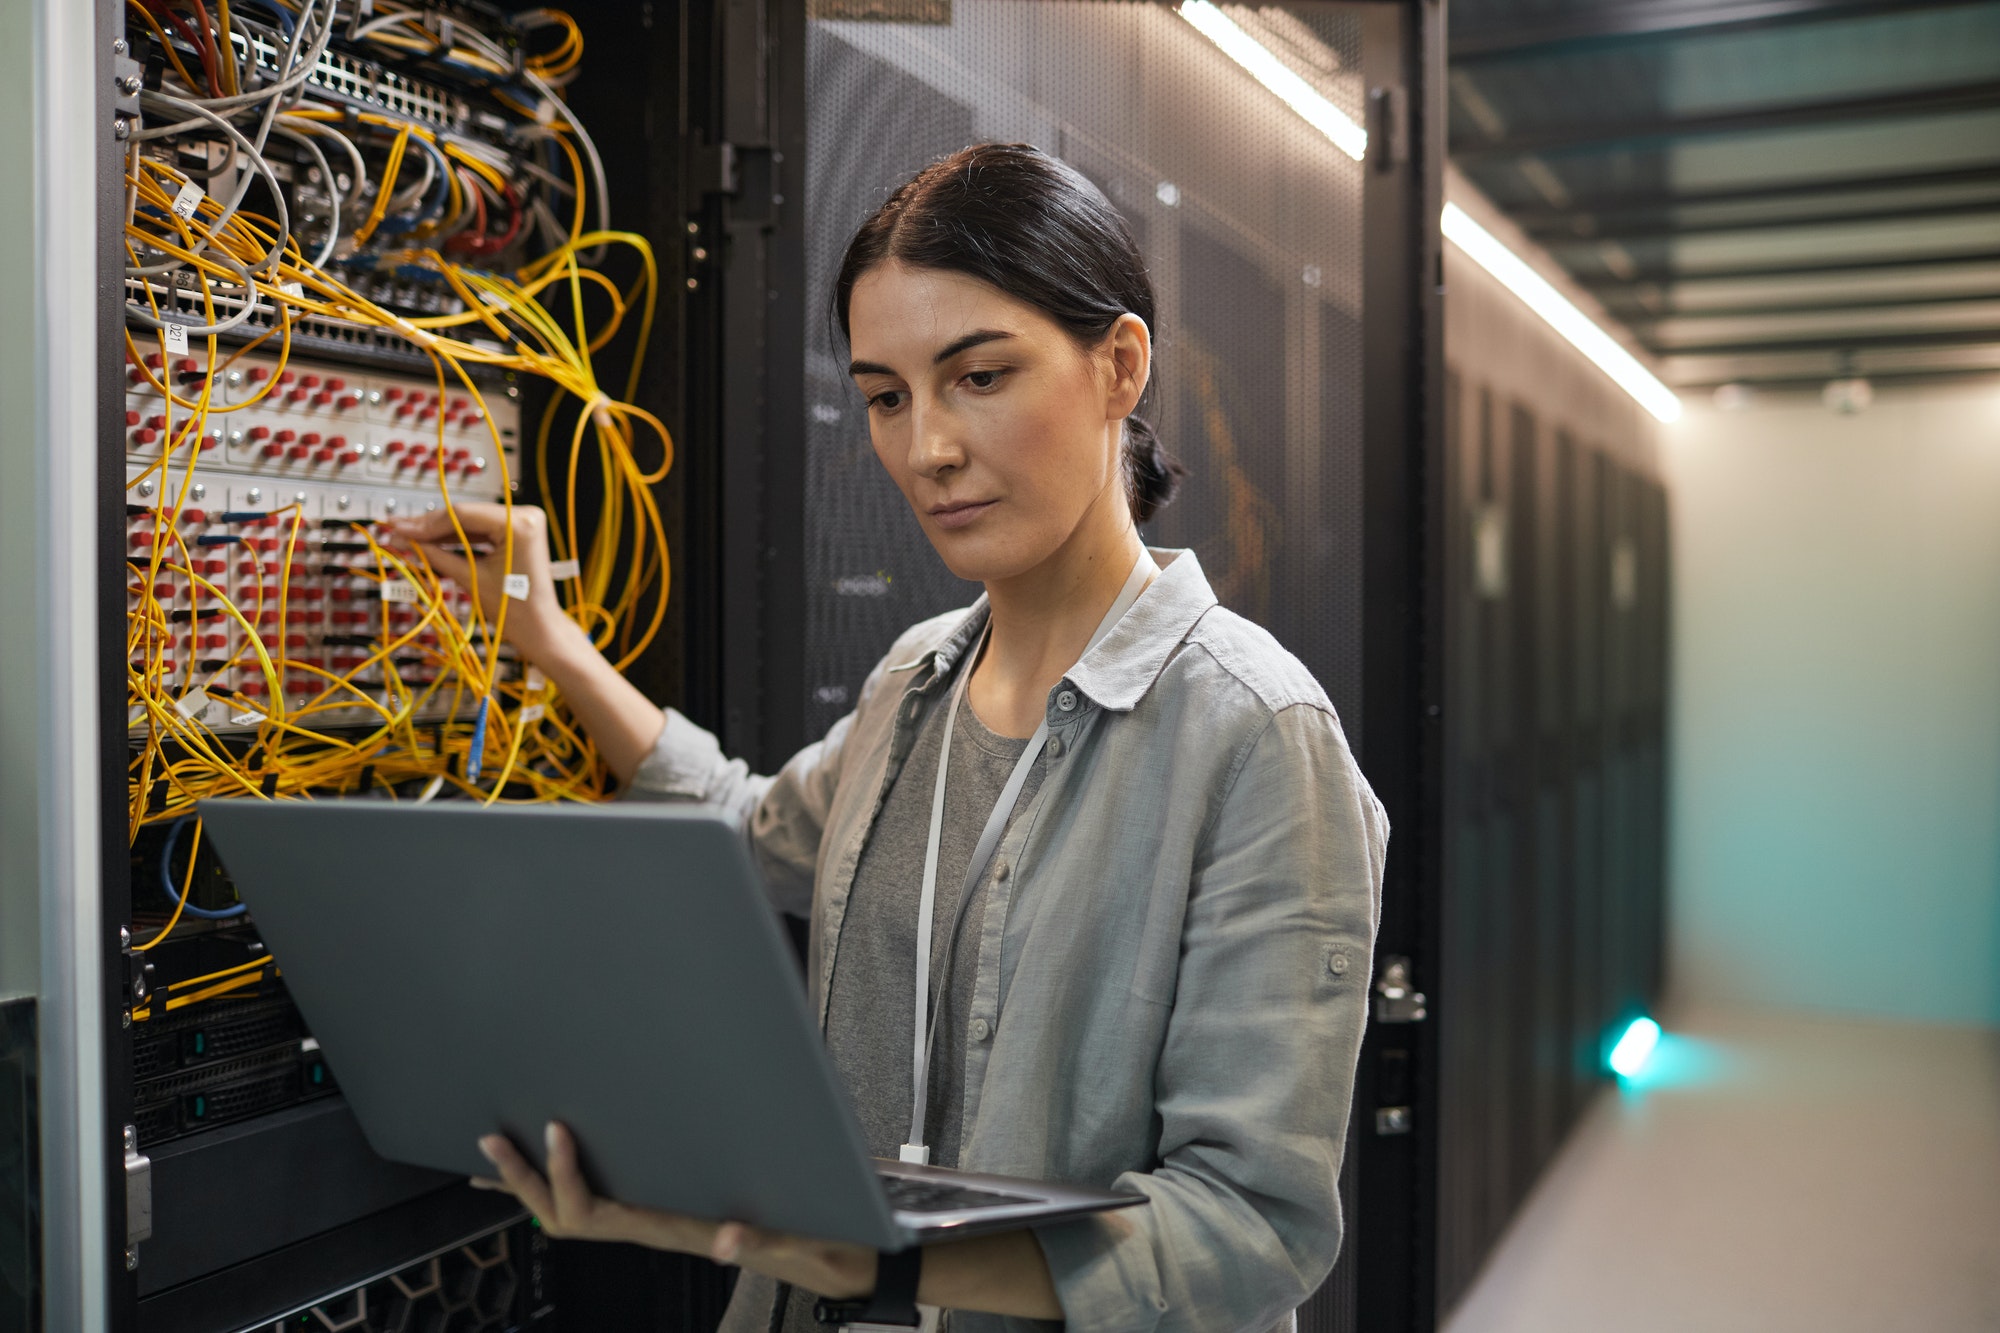 Female Network Technician Inspecting Servers in Data Center